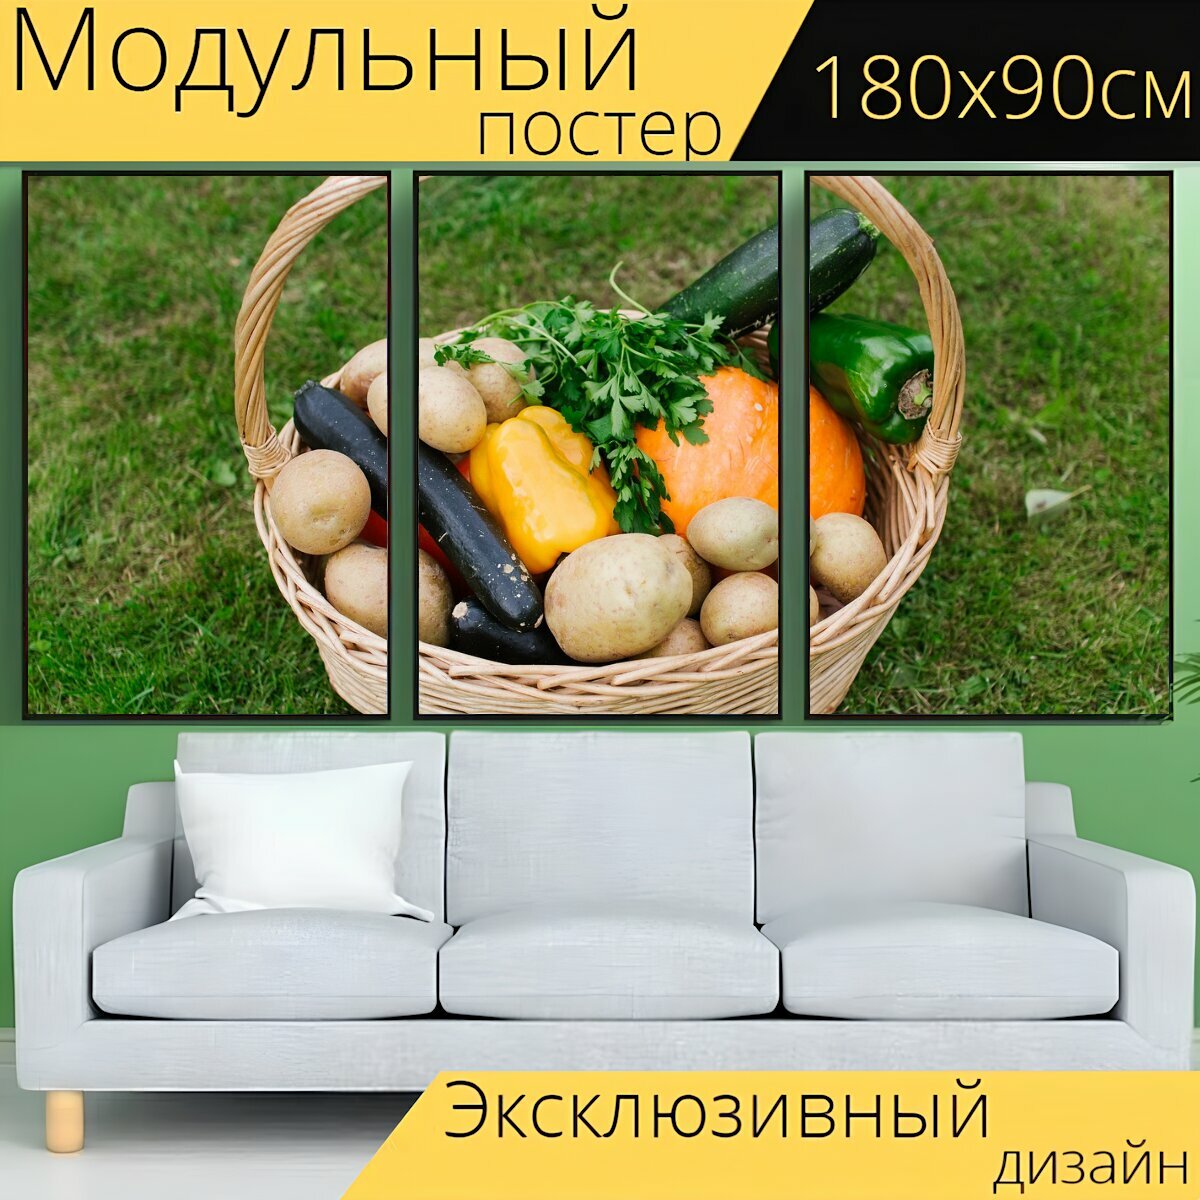 Модульный постер "Корзина, овощи, еда" 180 x 90 см. для интерьера